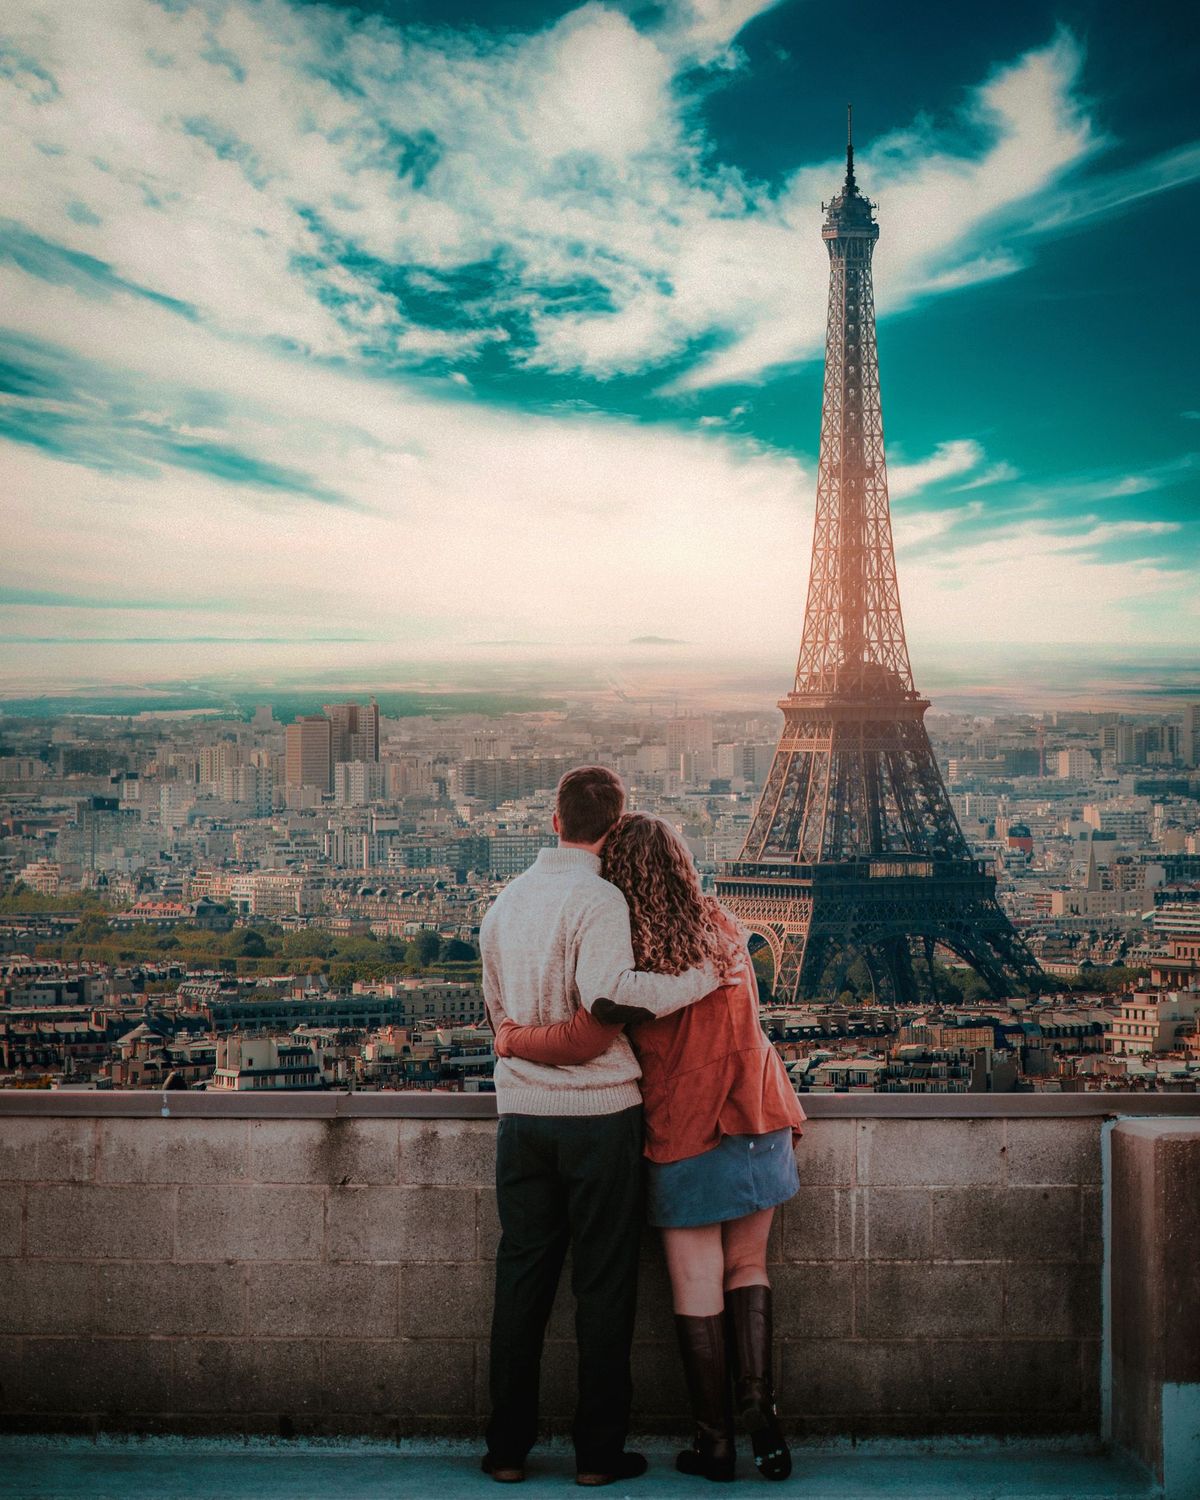 Paris sightseeing